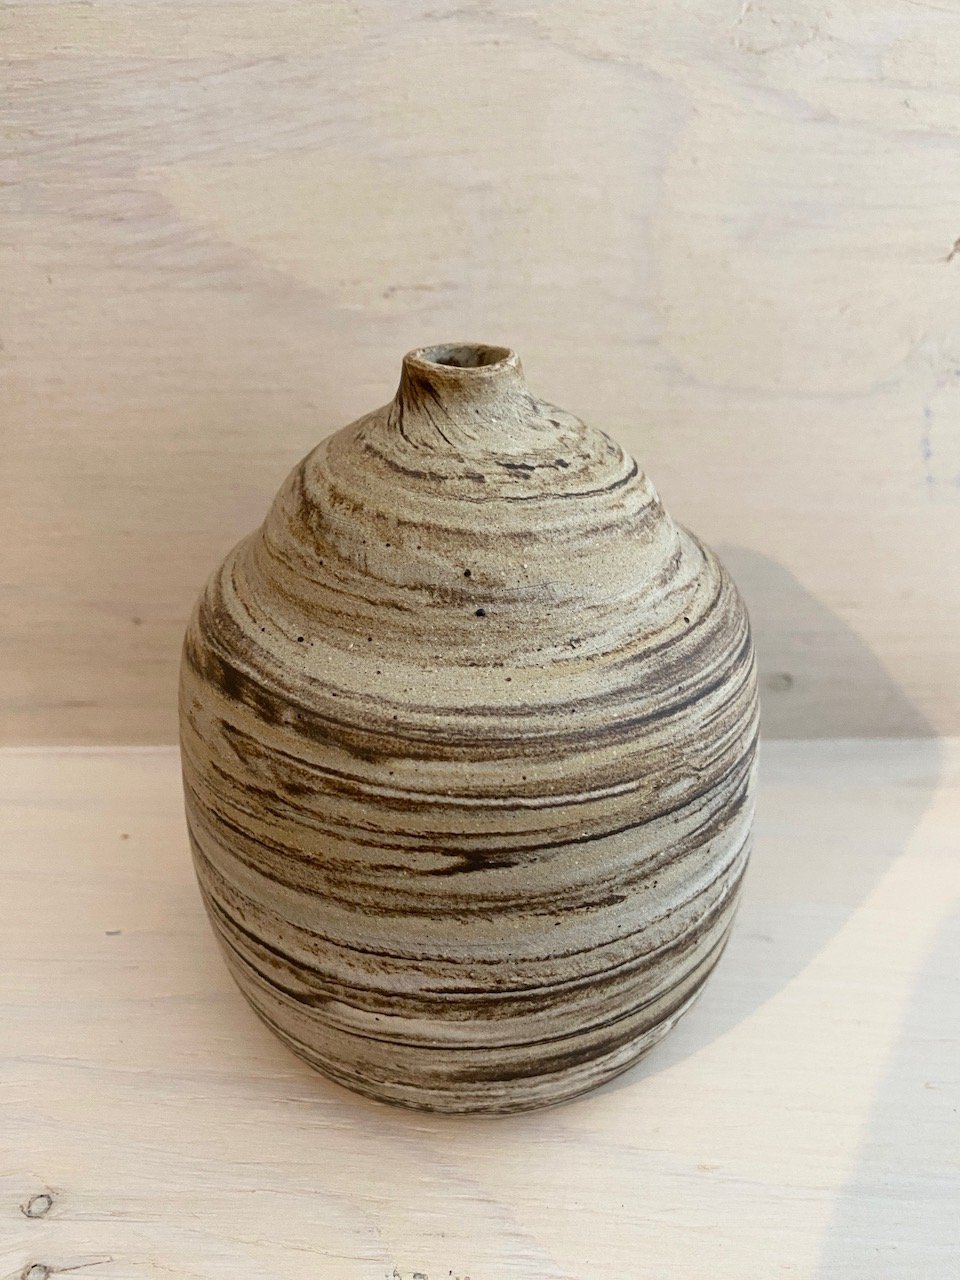 Large Vase in Mixed Clay & Sand | #3L | by Emporium Julium - Lifestory - Emporium Julium